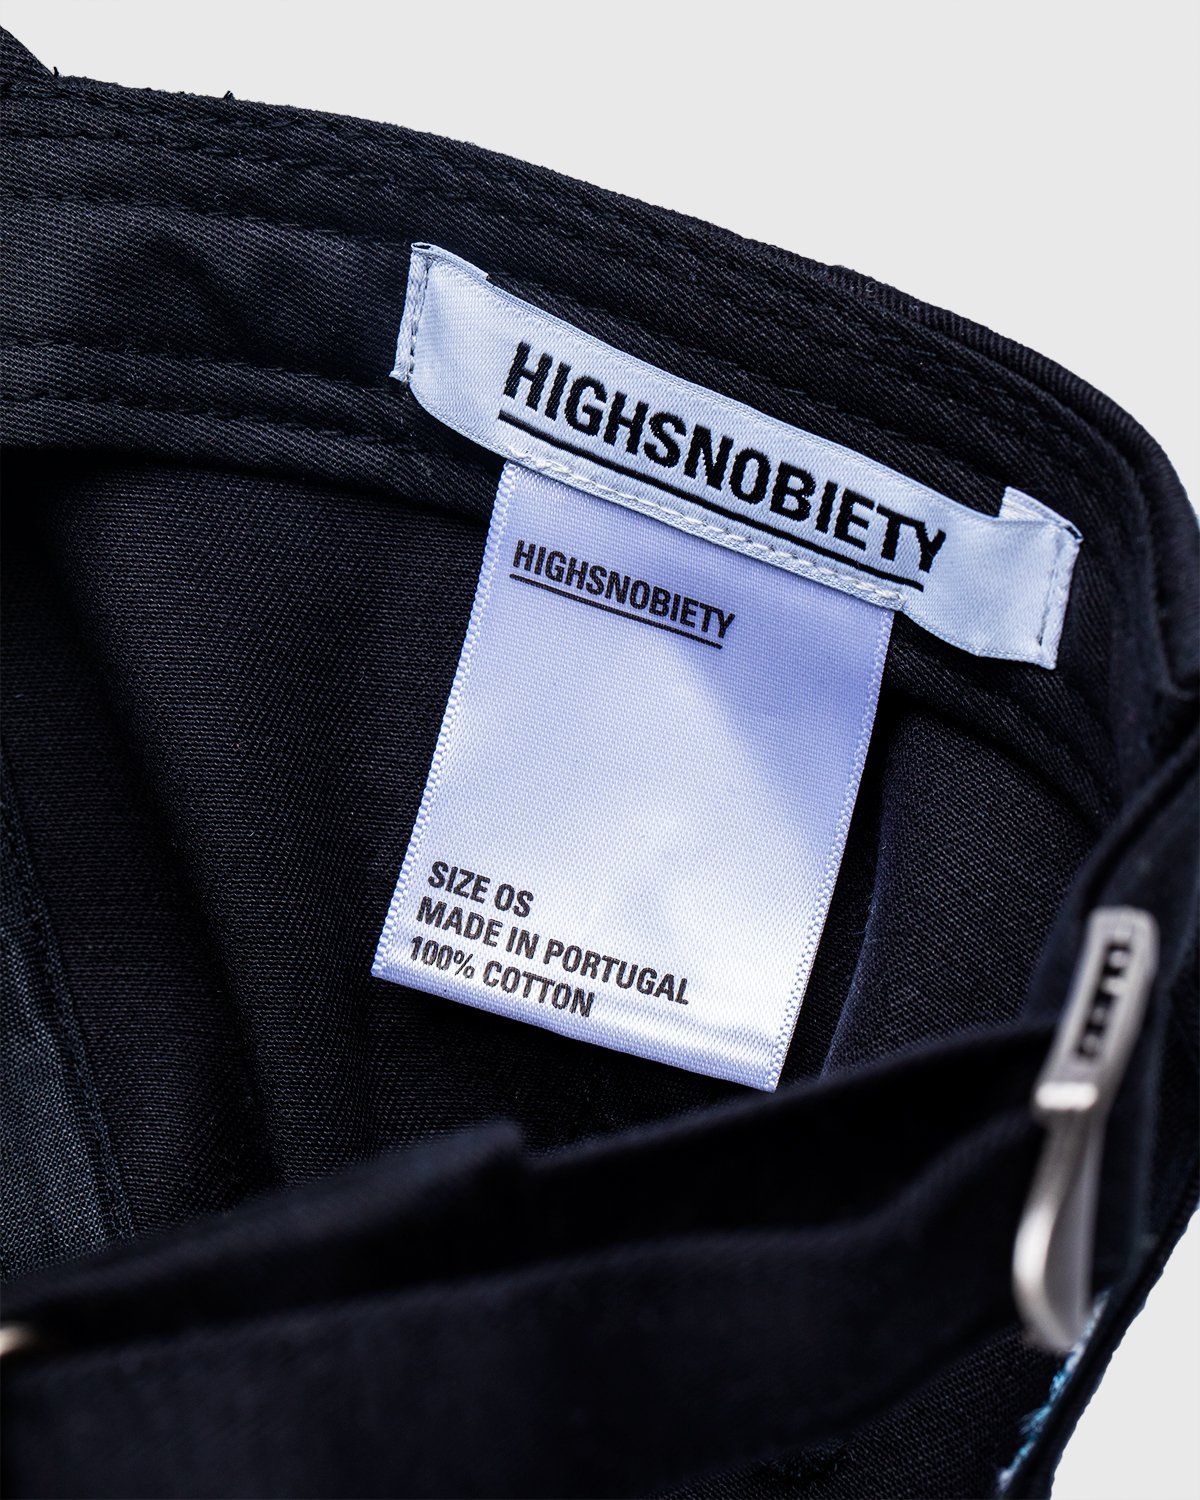 Highsnobiety – Not In Paris 3 x Galerie Perrotin Cap Black - Caps - Black - Image 4